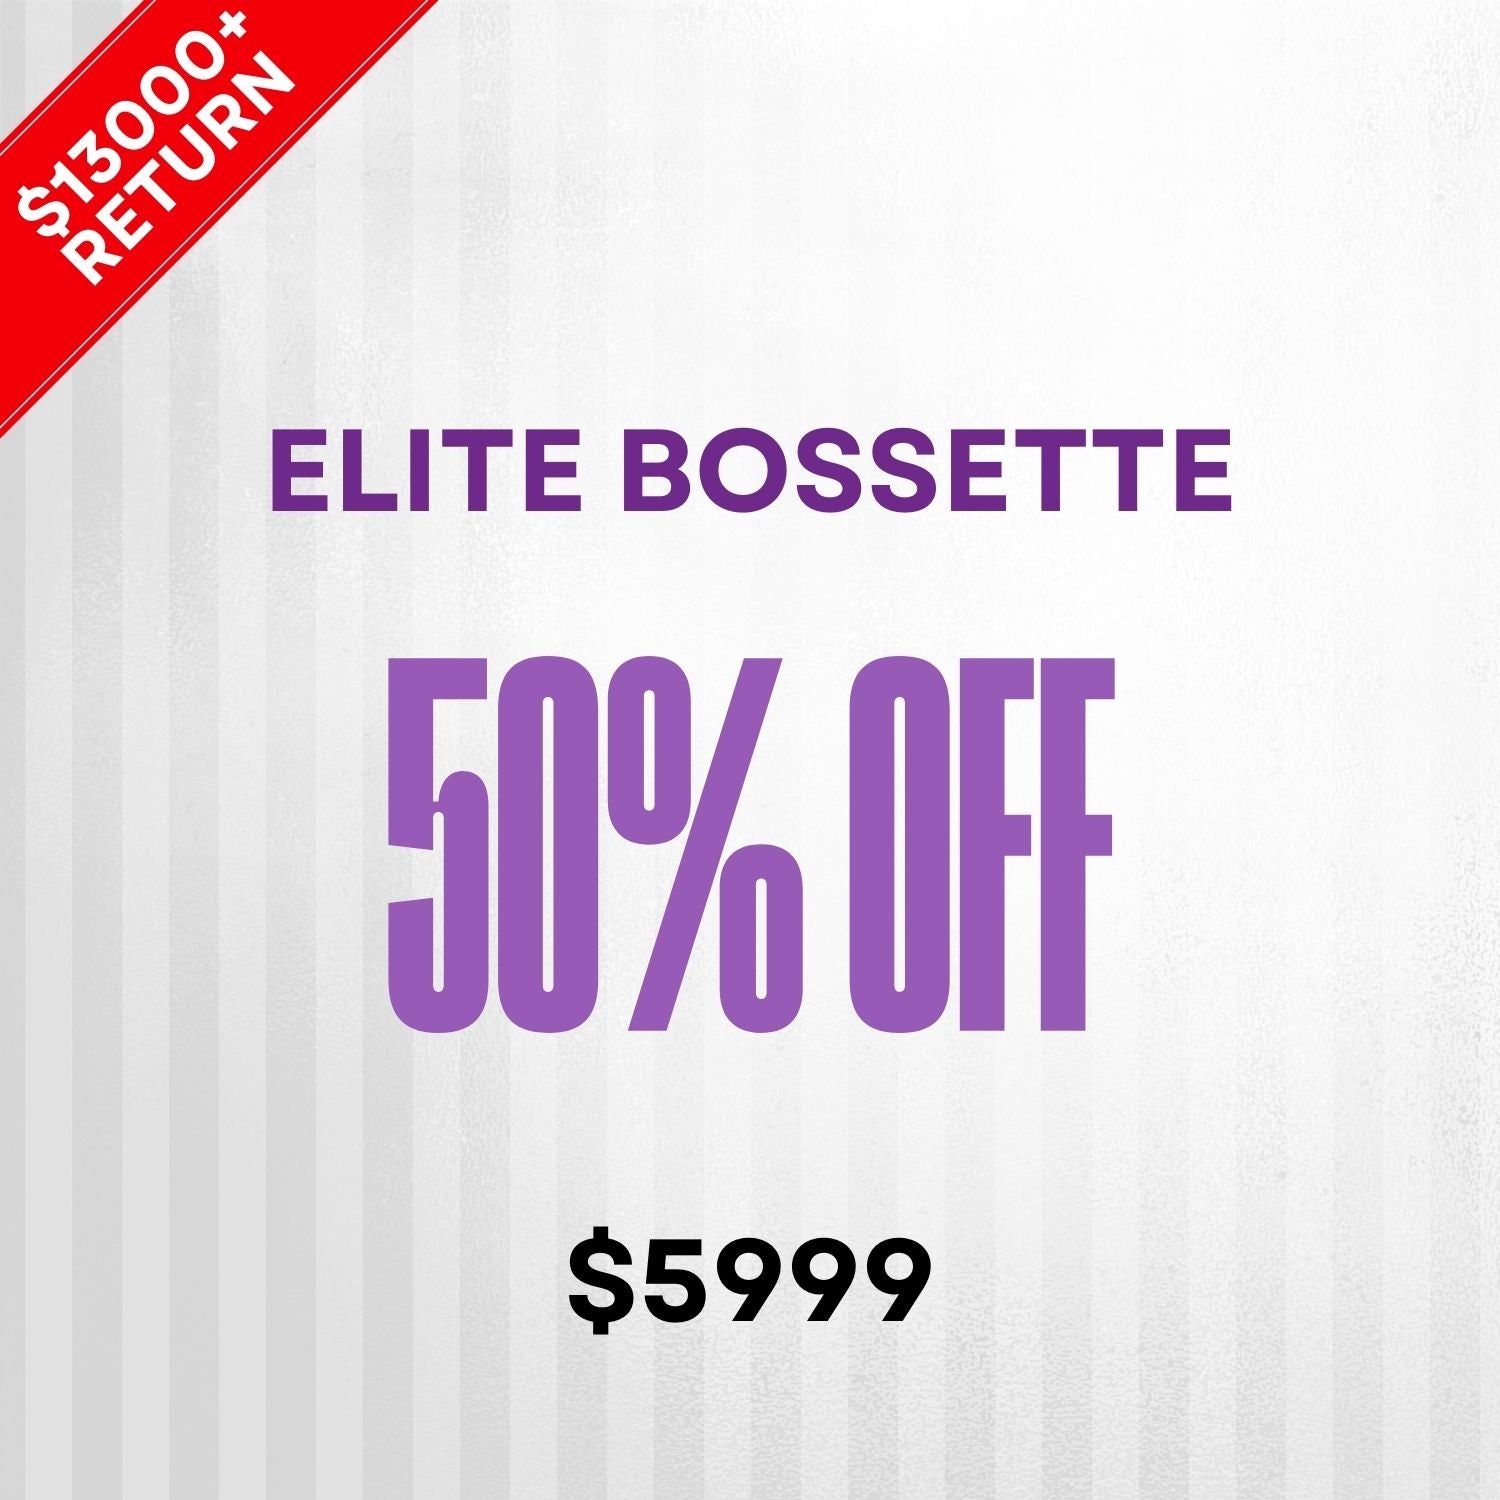 Elite Bossette - 50% off